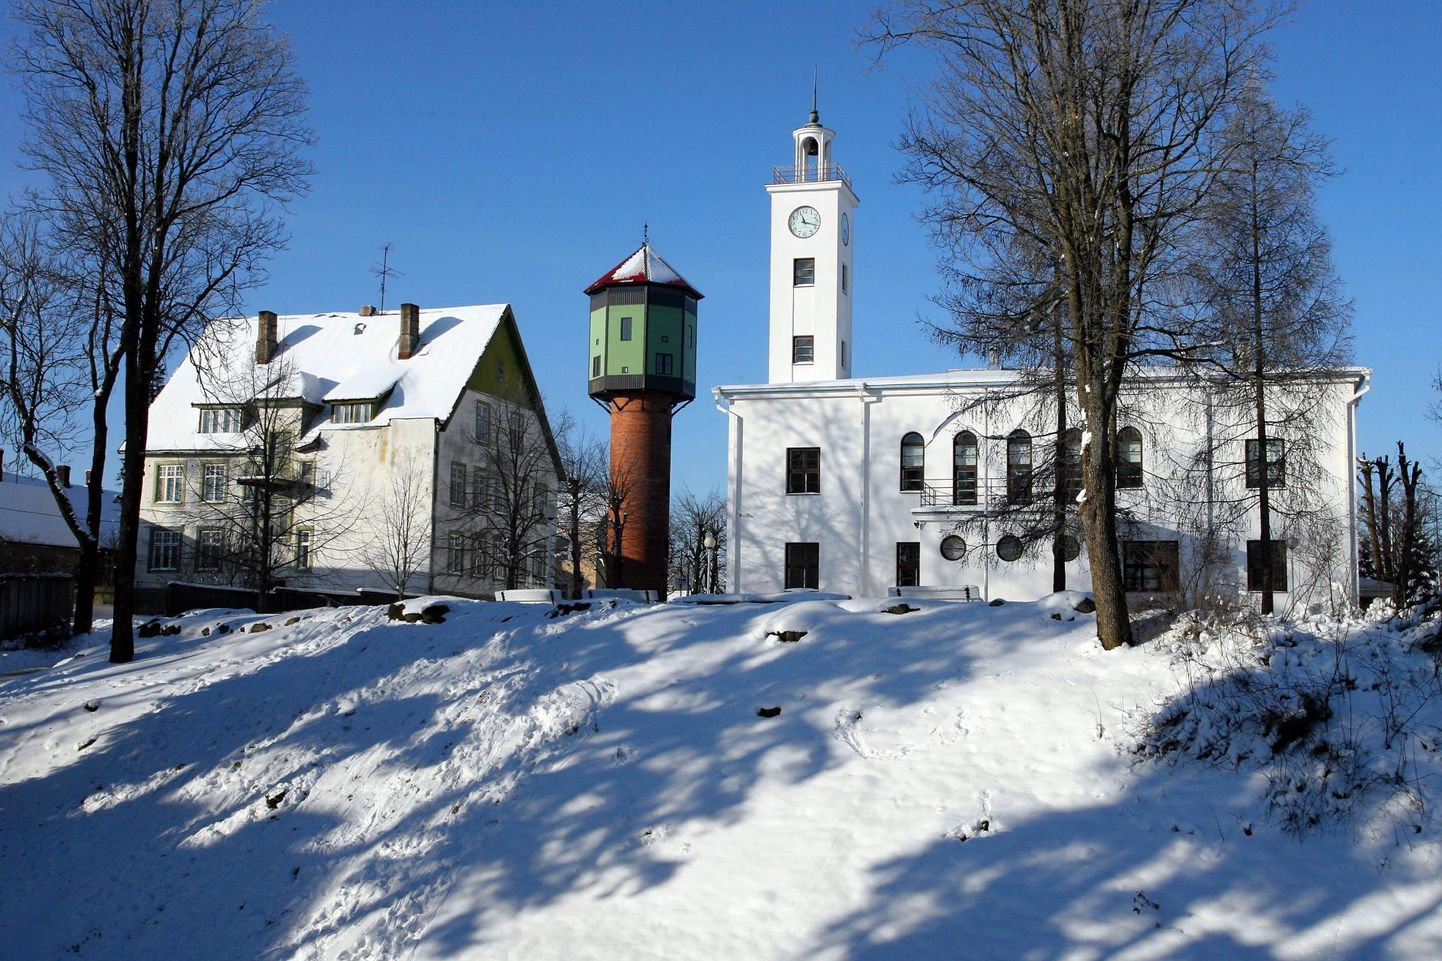  Viljandi kuulub UNESCO loovlinnade võrgustikku 2019. aastast.